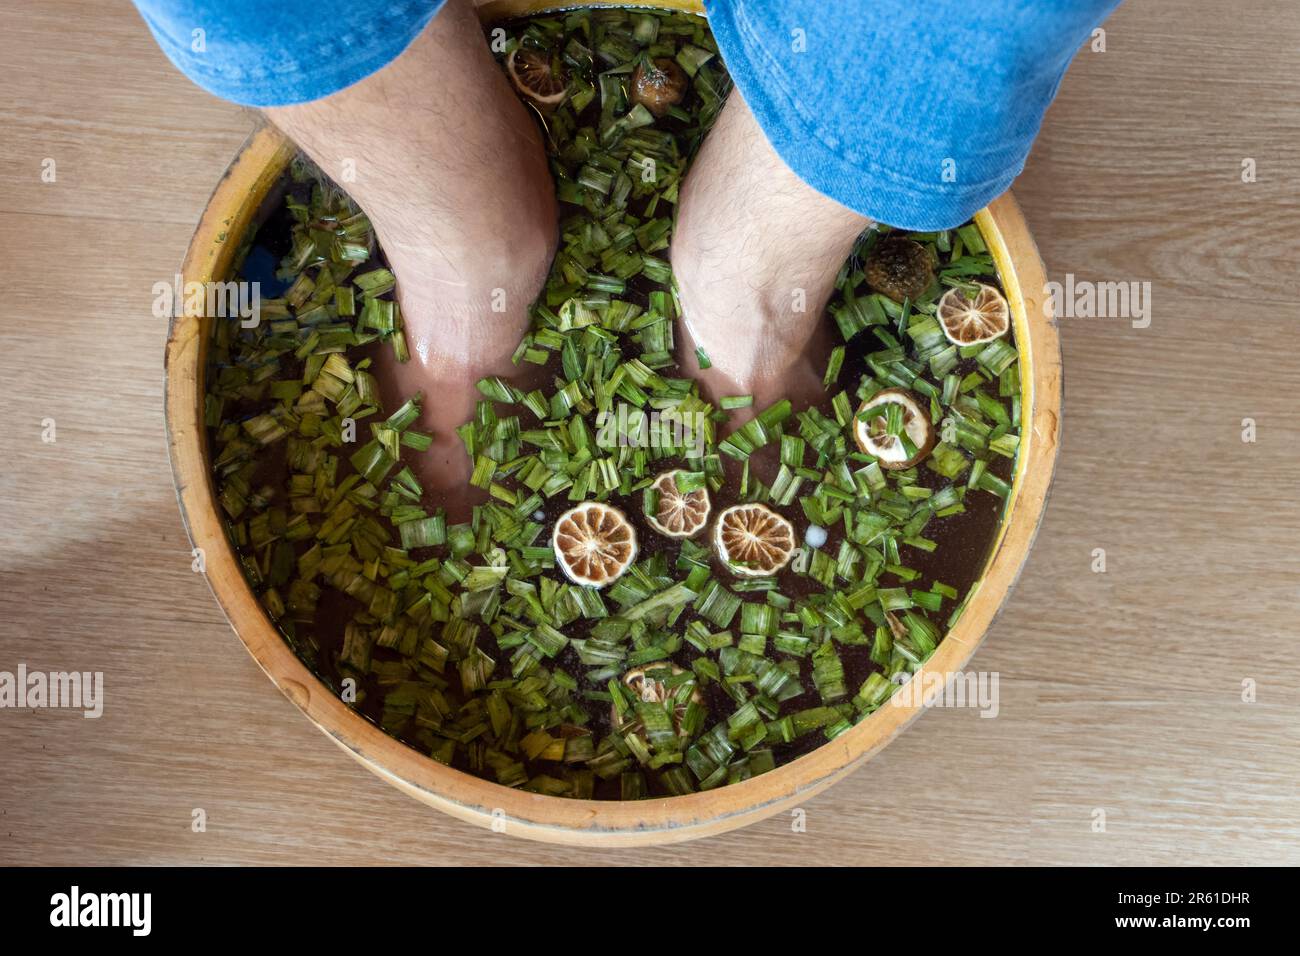 Un homme souak ses pieds dans un bain de plantes Banque D'Images